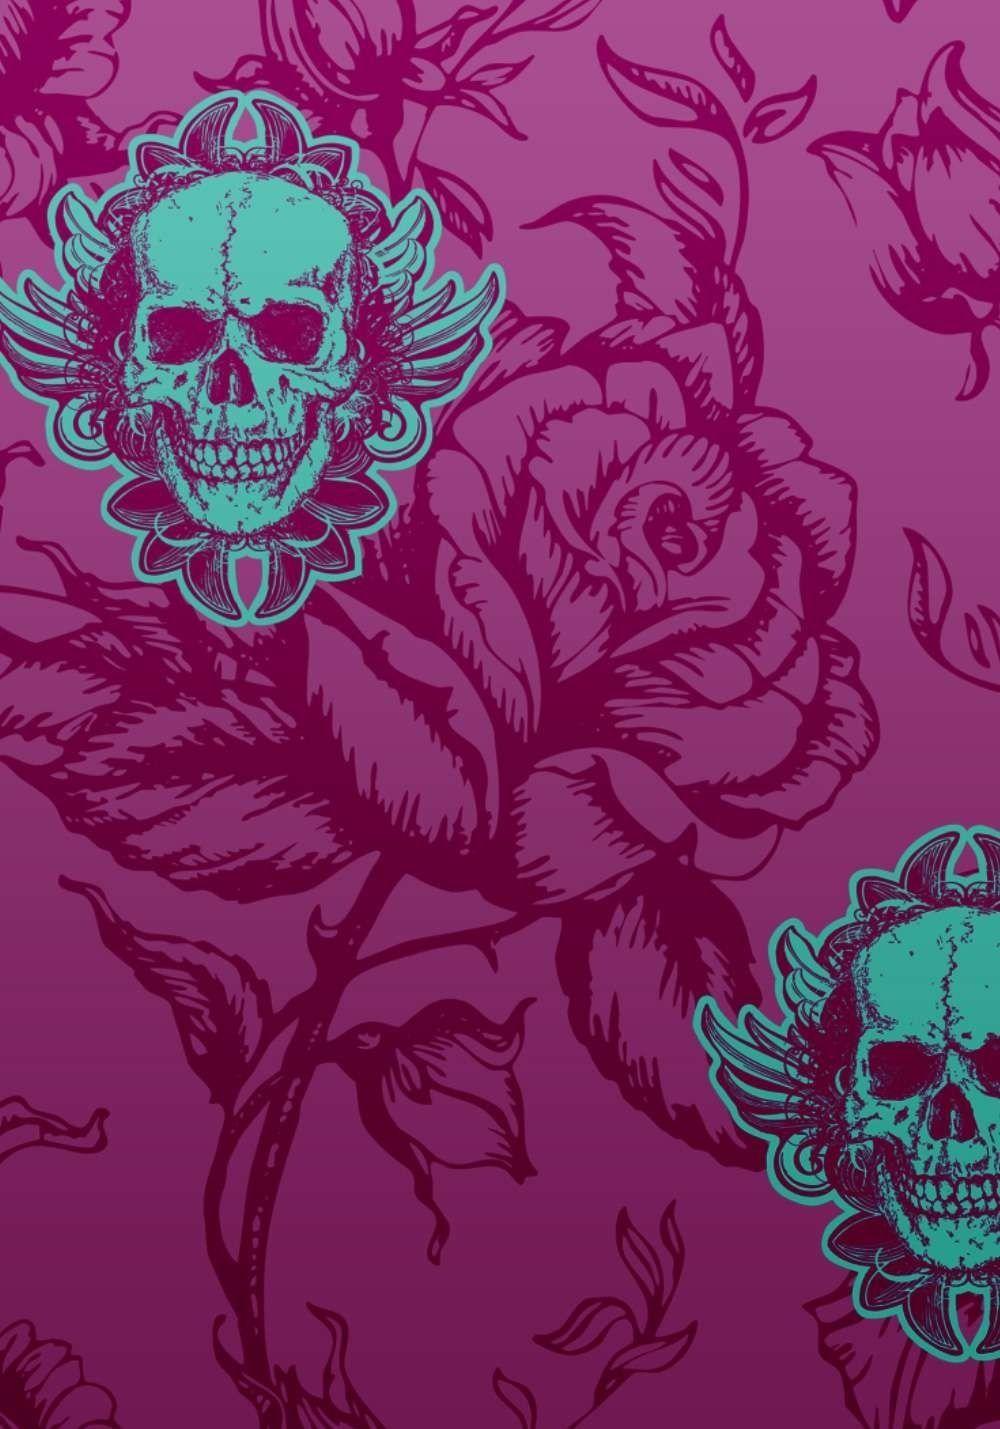 Girl Skull Wallpapers - Top Free Girl Skull Backgrounds - WallpaperAccess